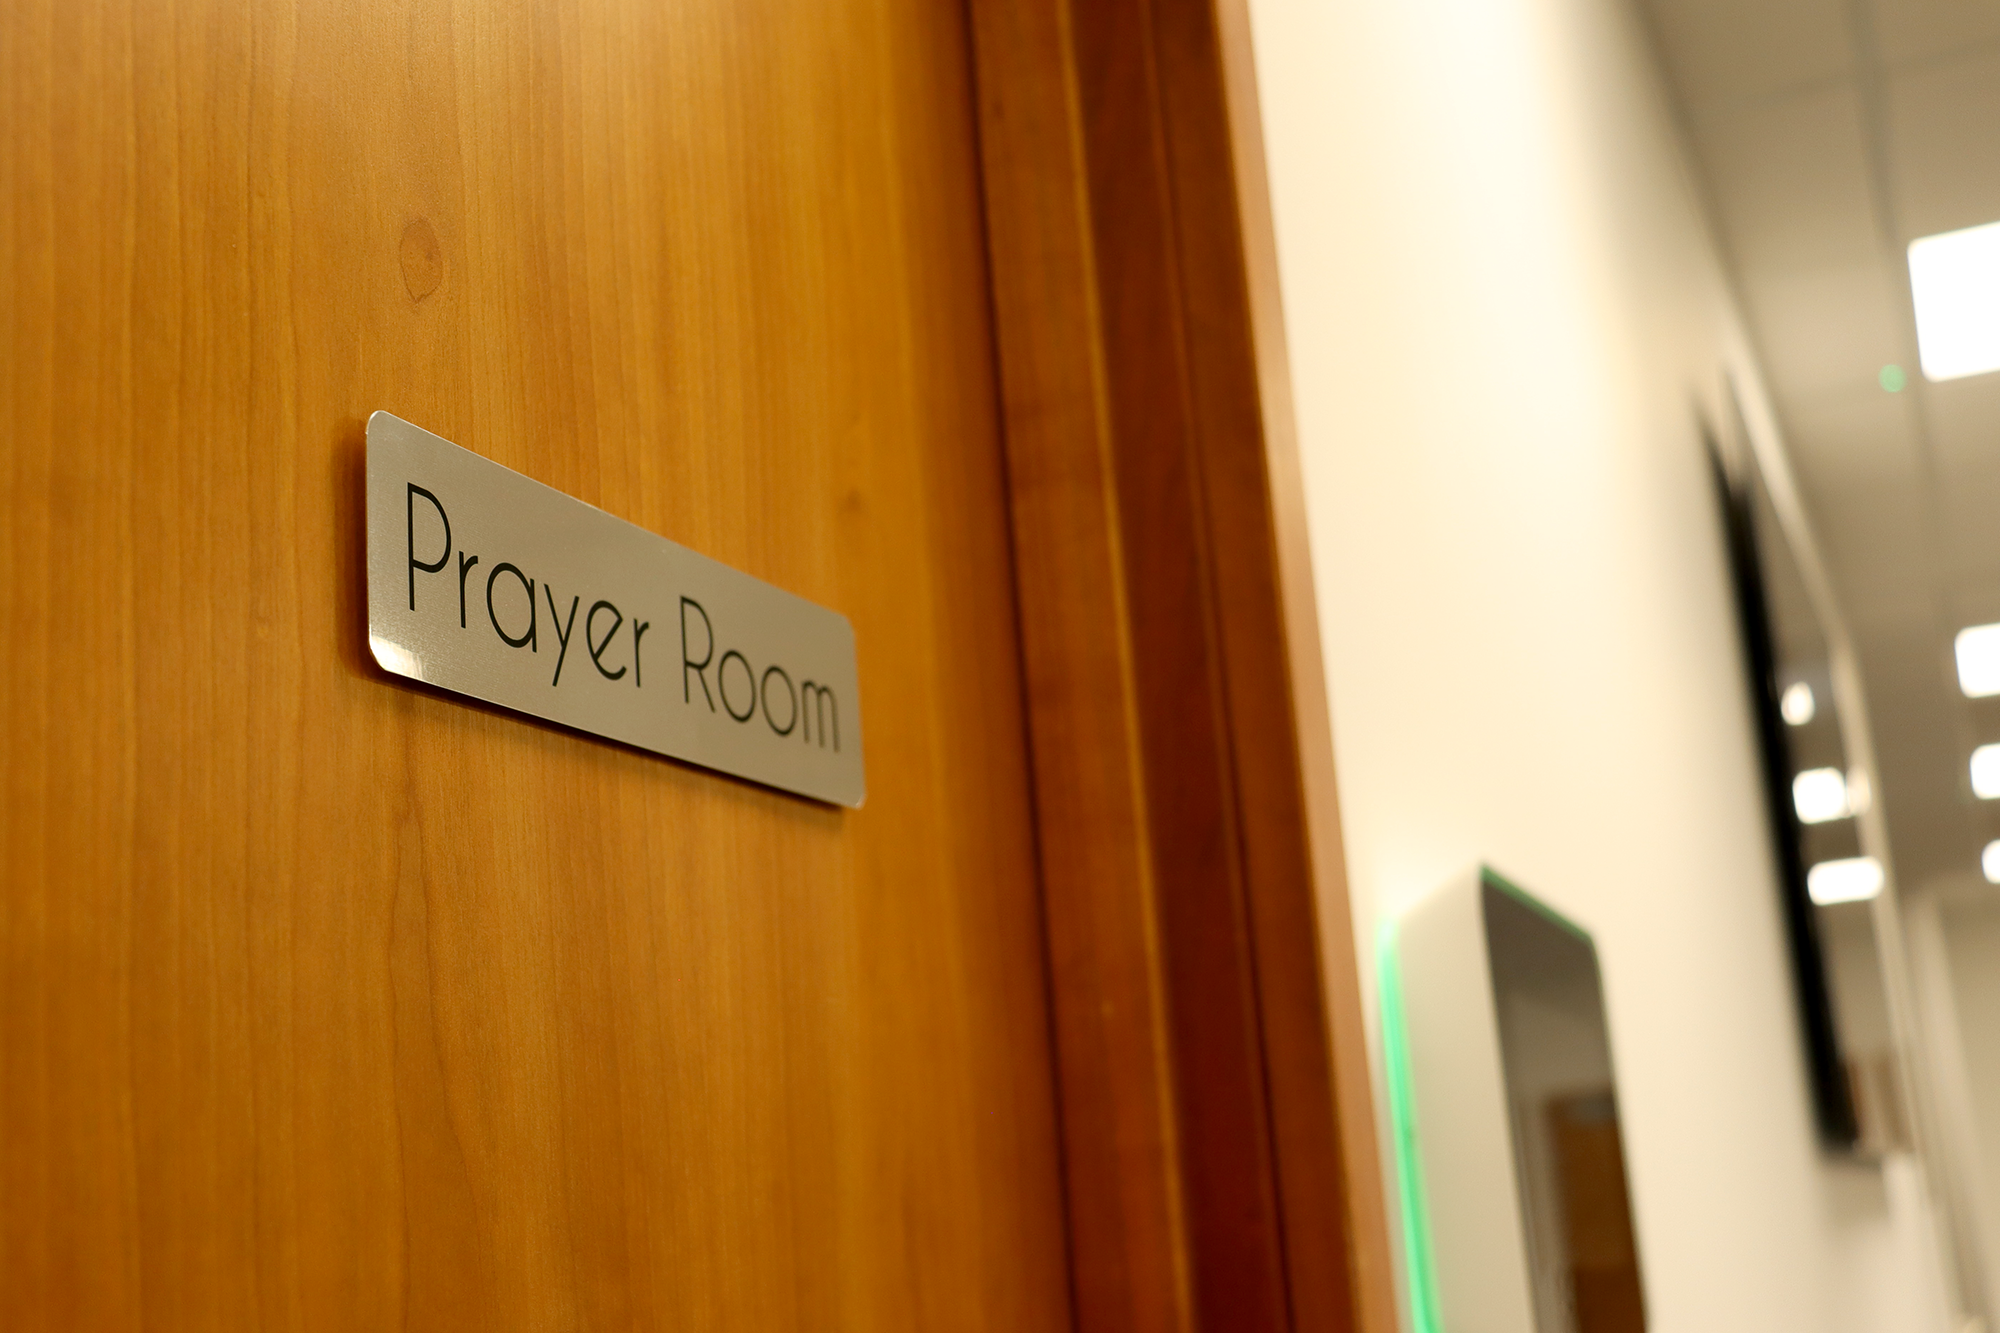 Pray room